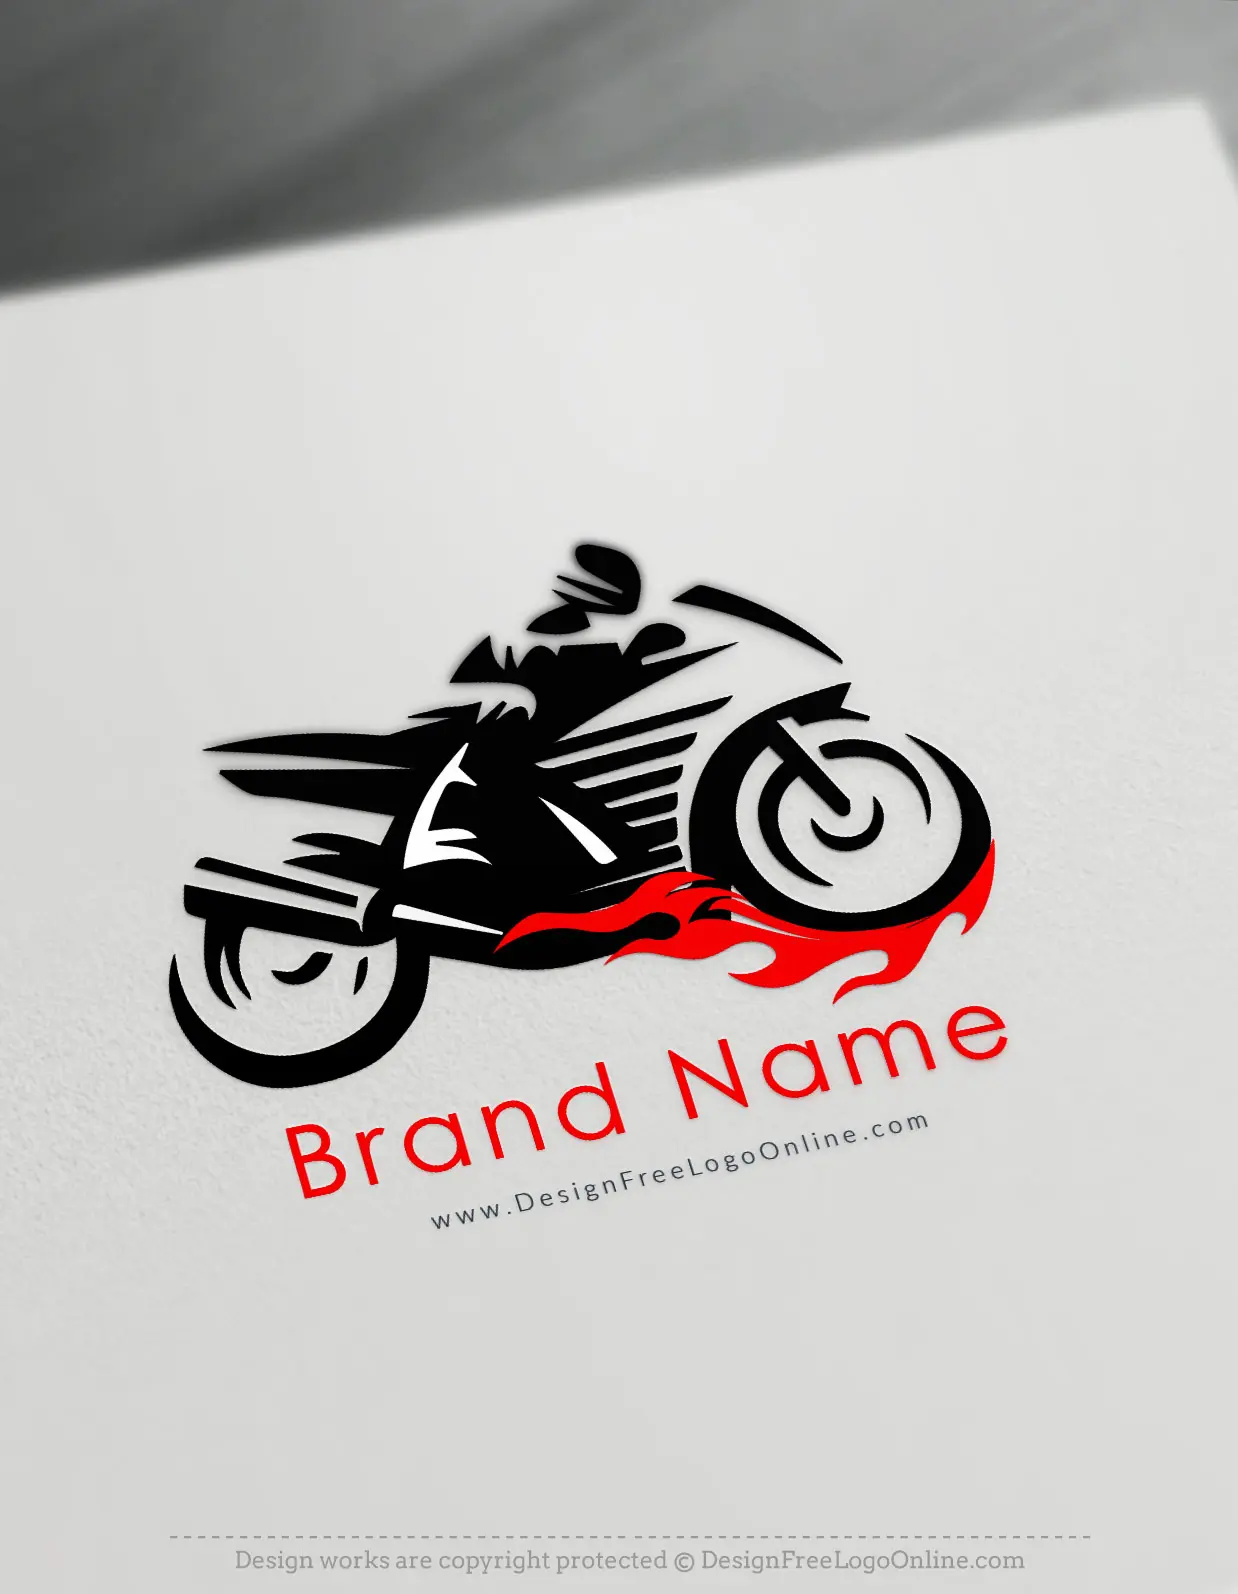 creador de logos de motos - Quién diseña logos de marcas